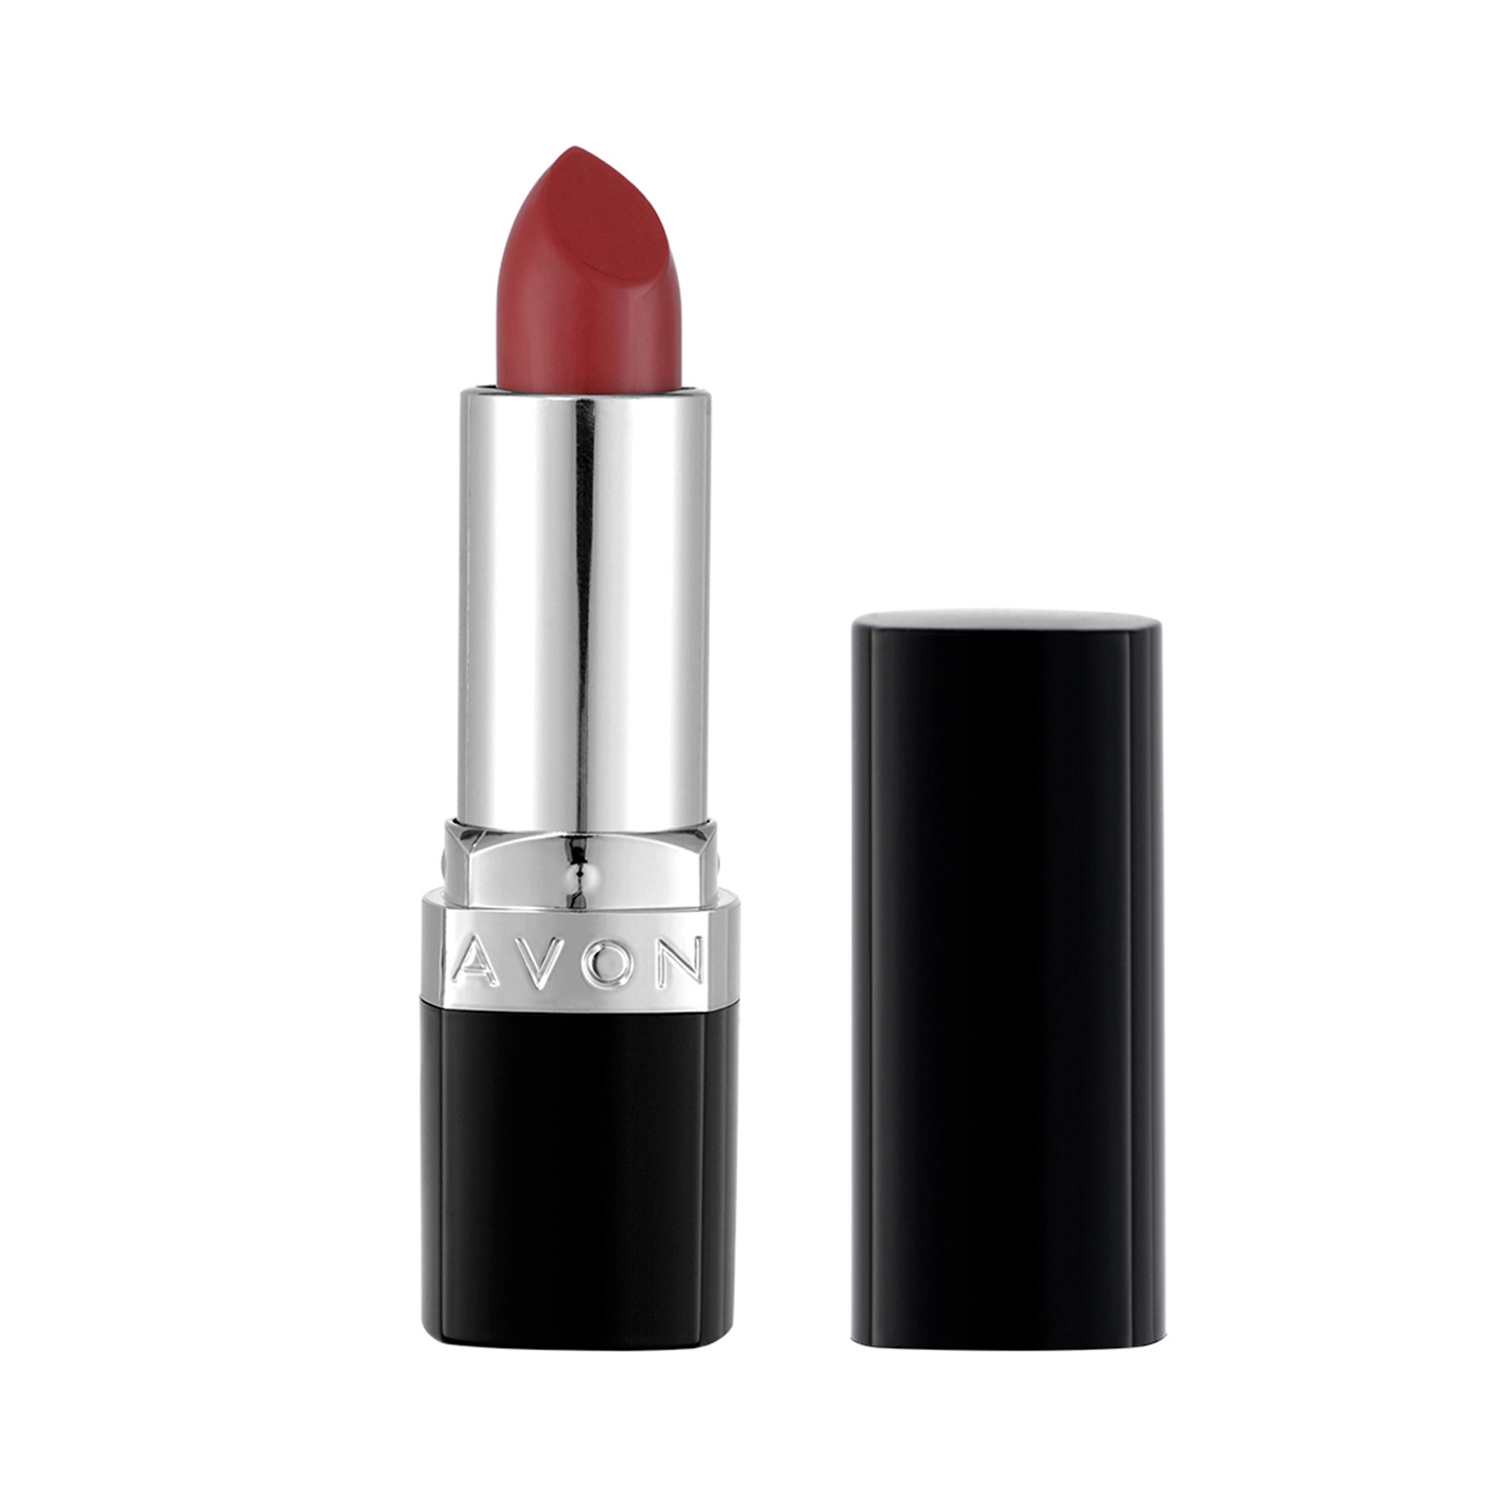 Avon True Color Lipstick SPF 15 - Wineberry (3.8g)